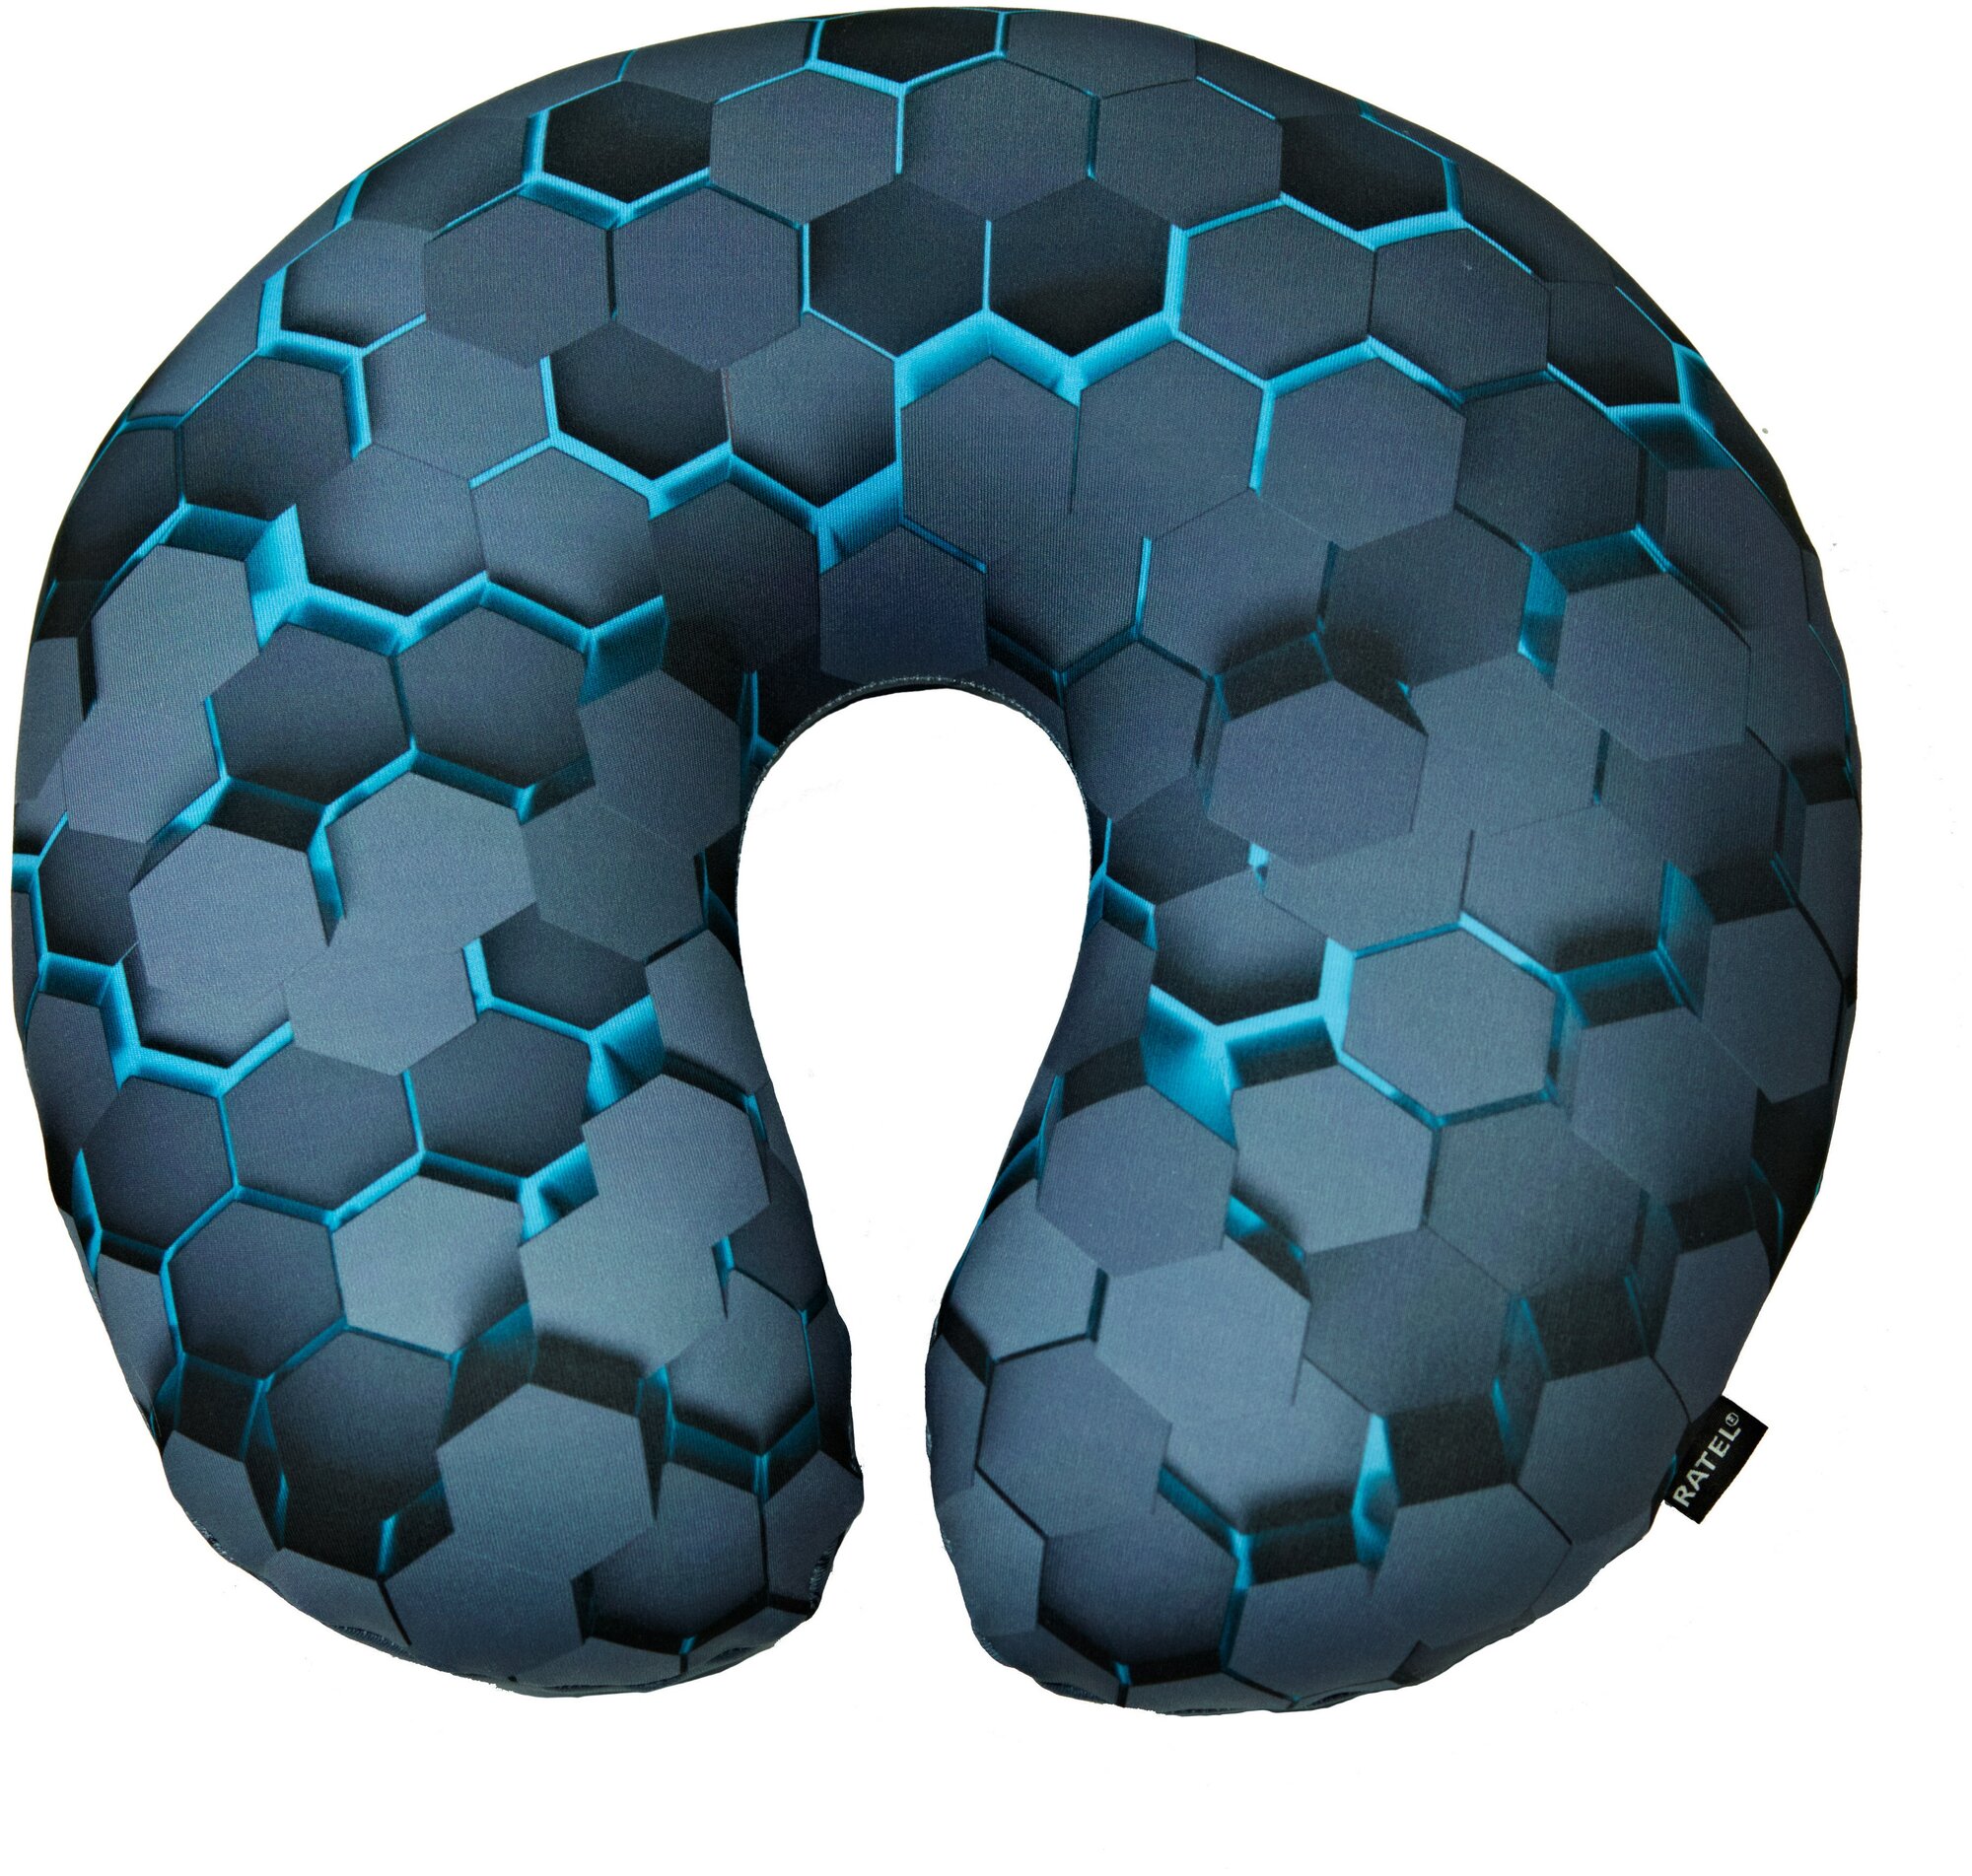 Подушка дорожная для шеи RATEL серия Art moments дизайн Black Hexagon.